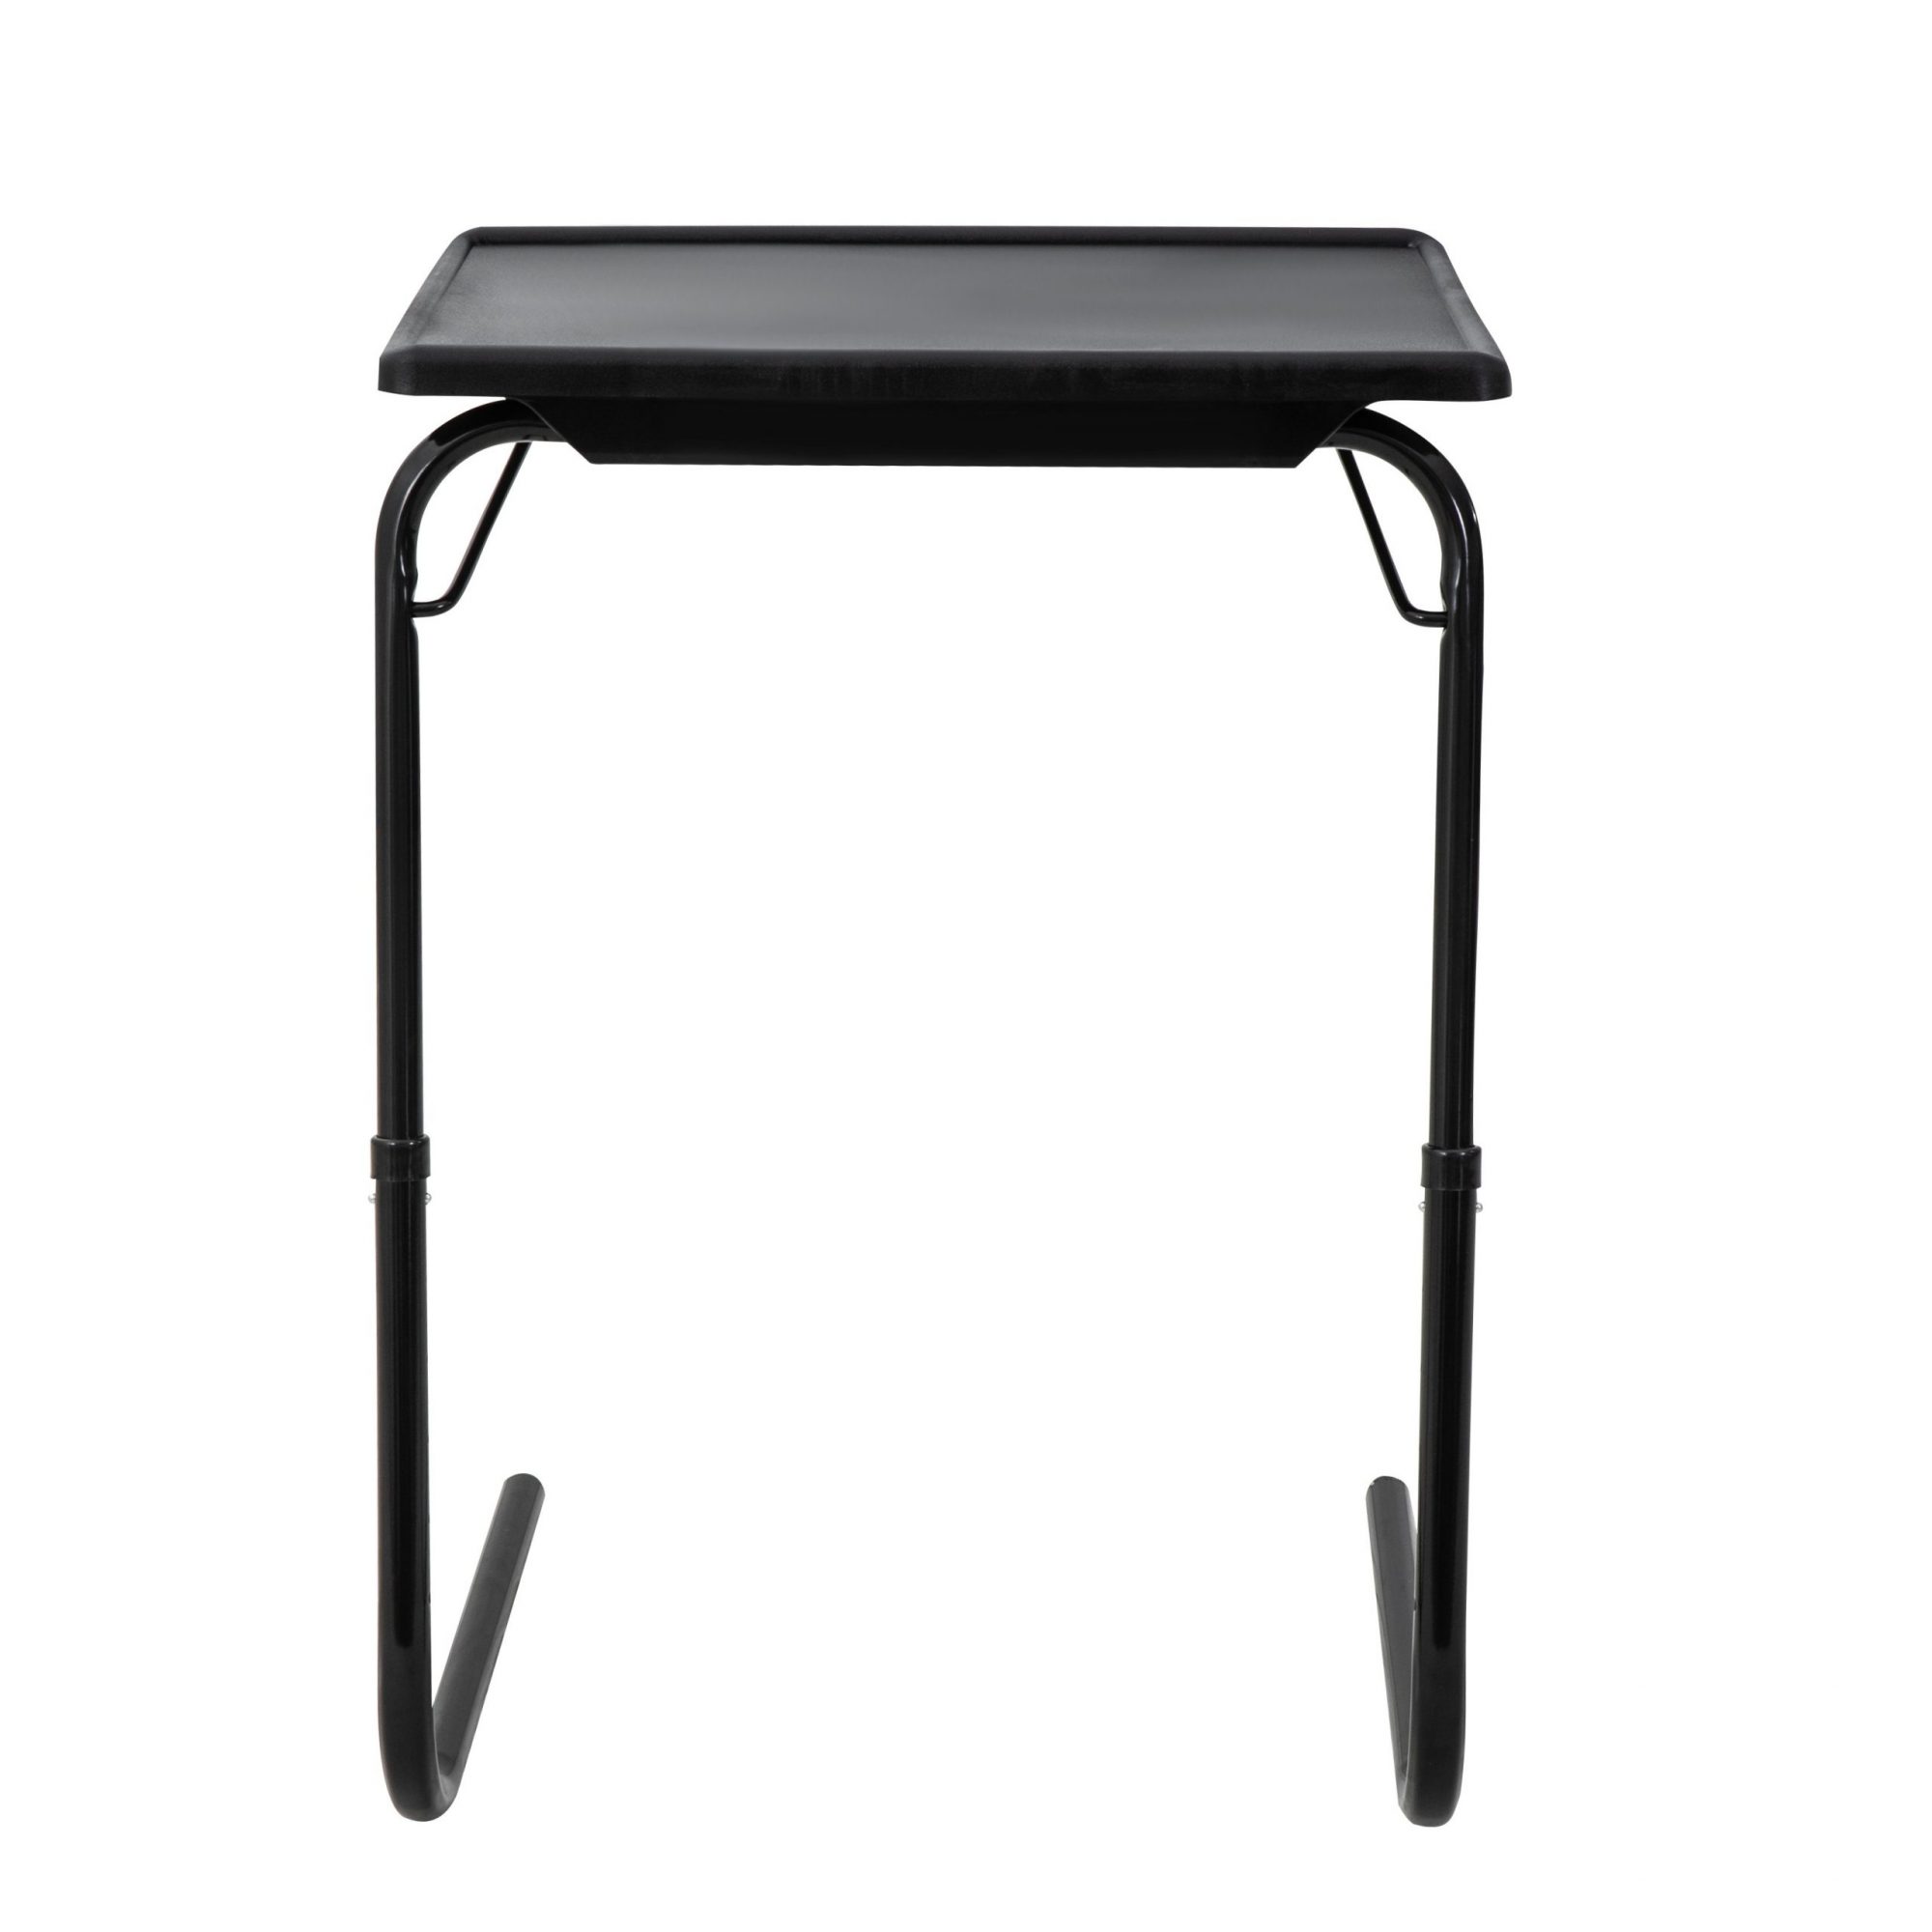 DREAMO Foldable Table Back Side